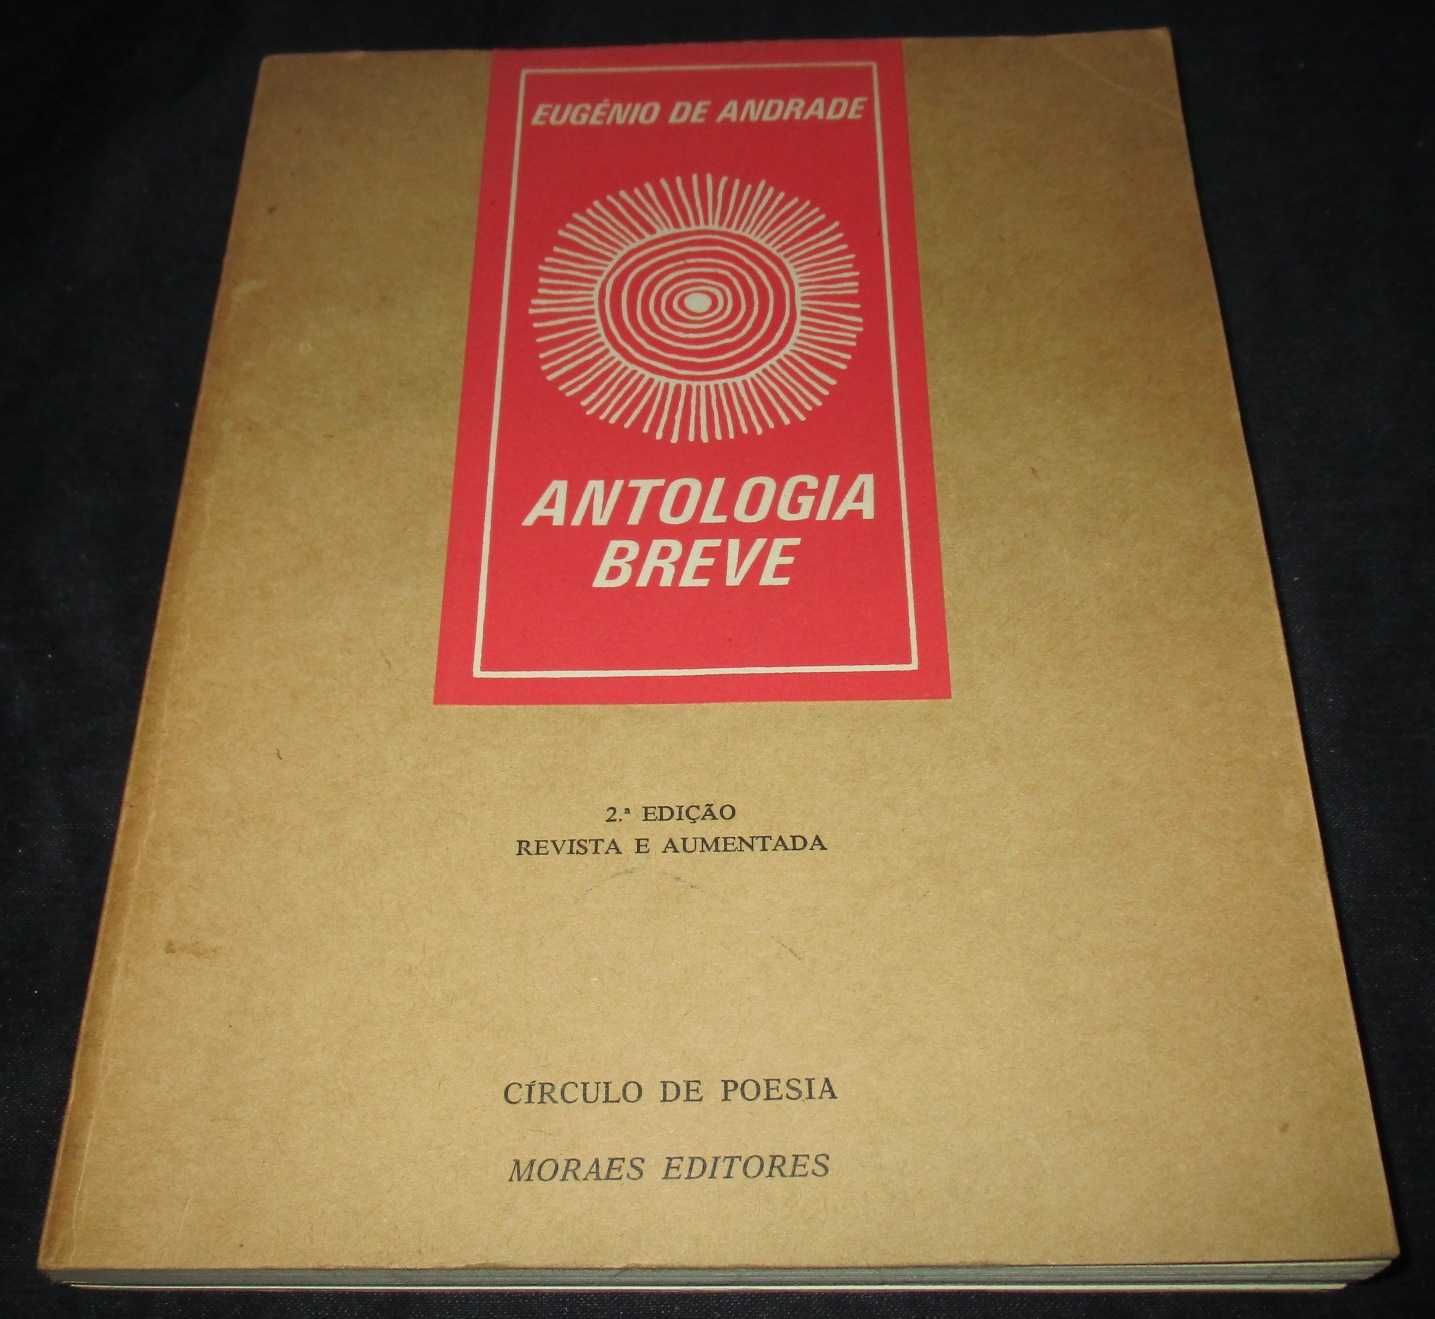 Livro Antologia Breve Eugénio de Andrade Círculo de Poesia